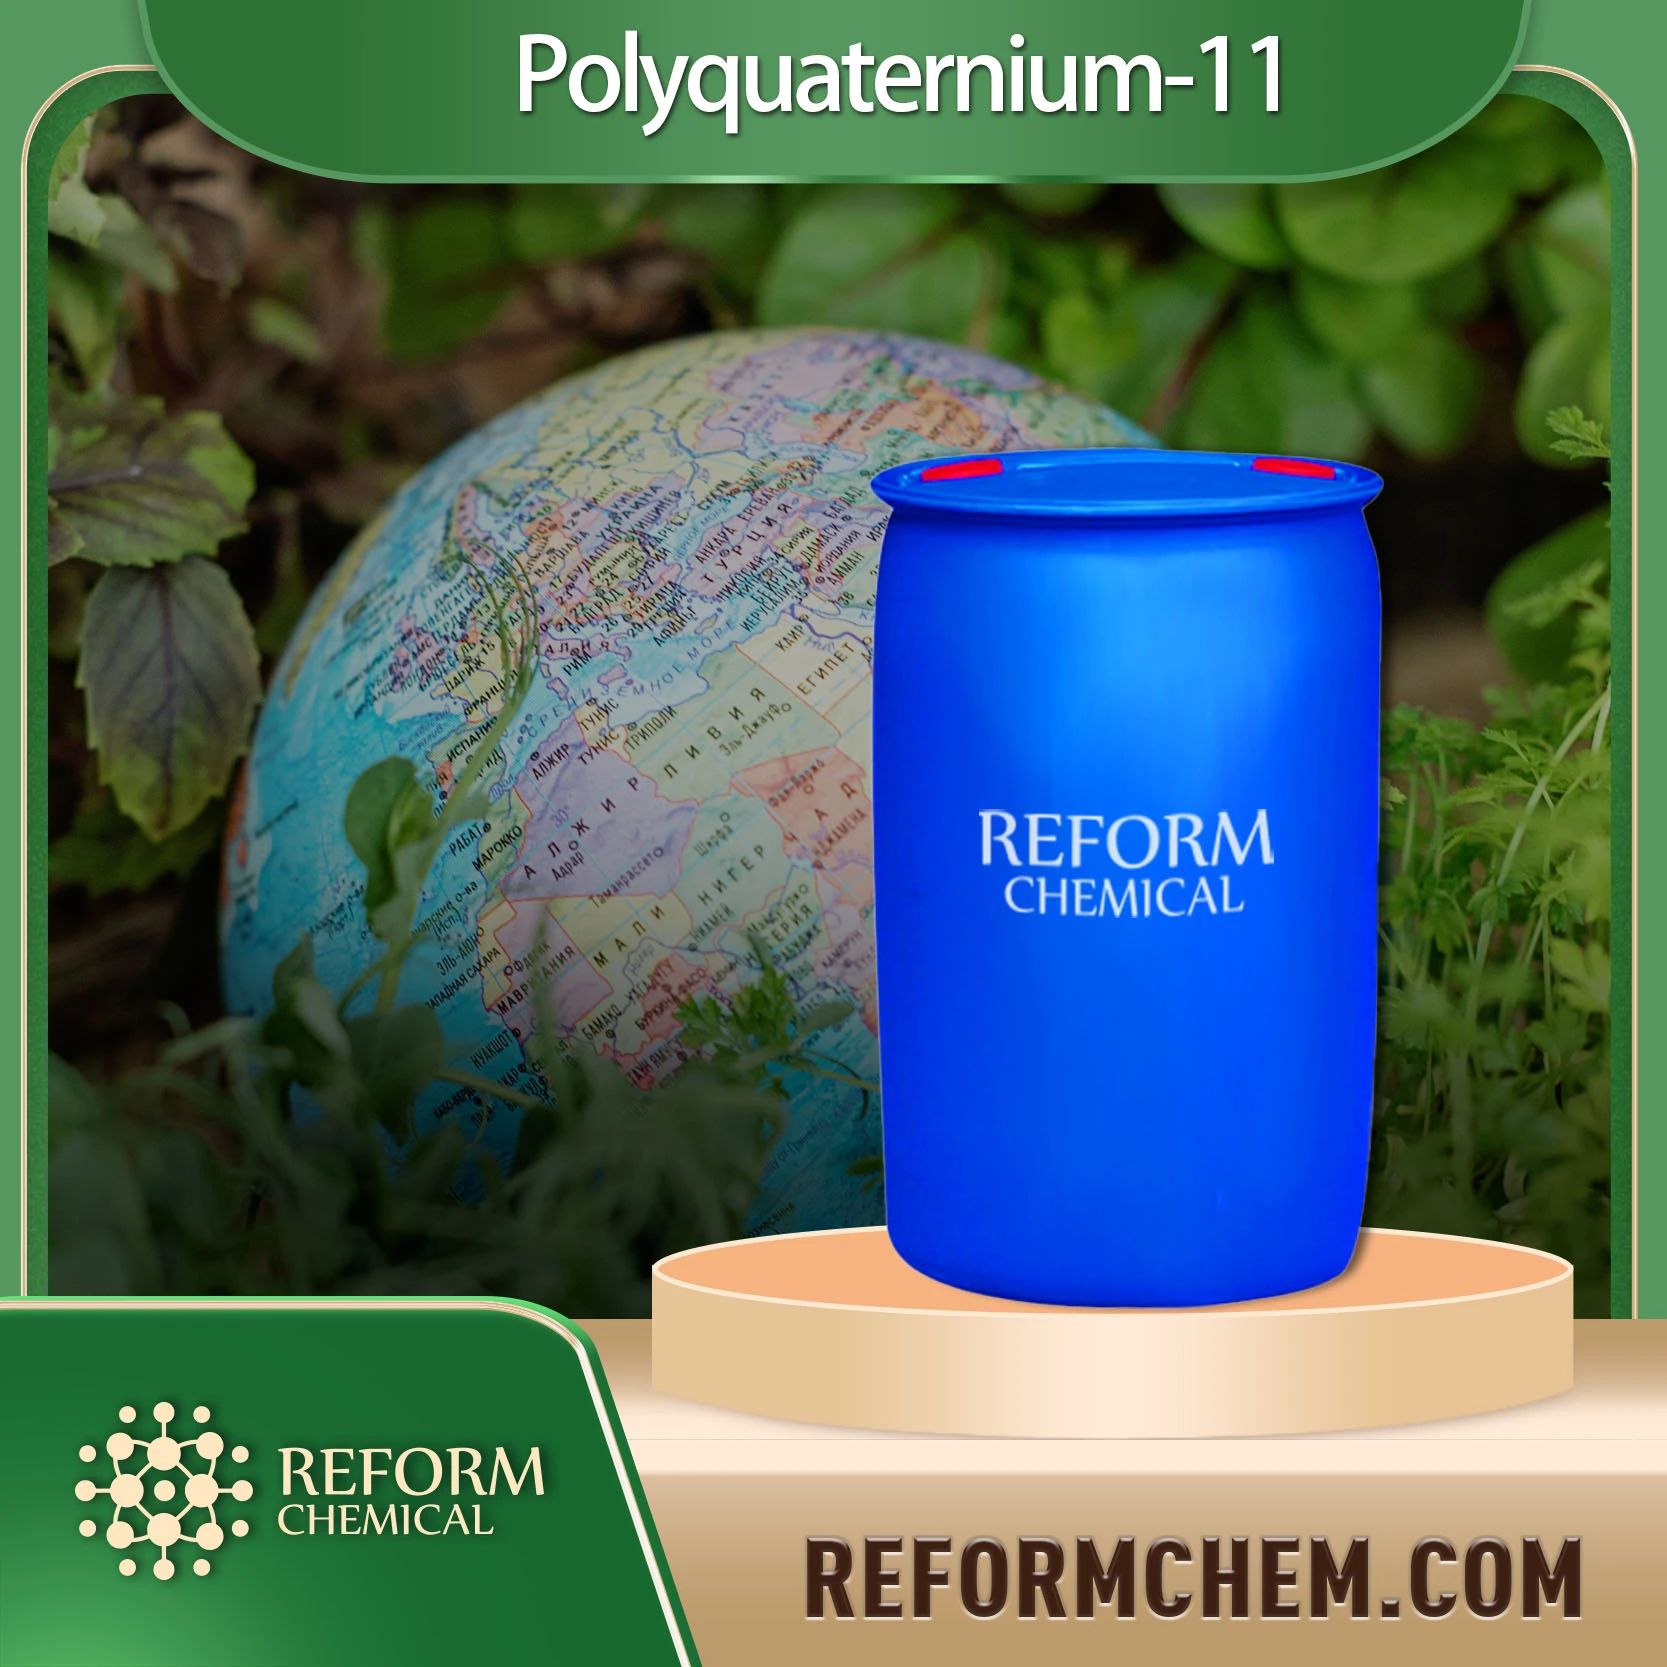 Polyquaternium-11